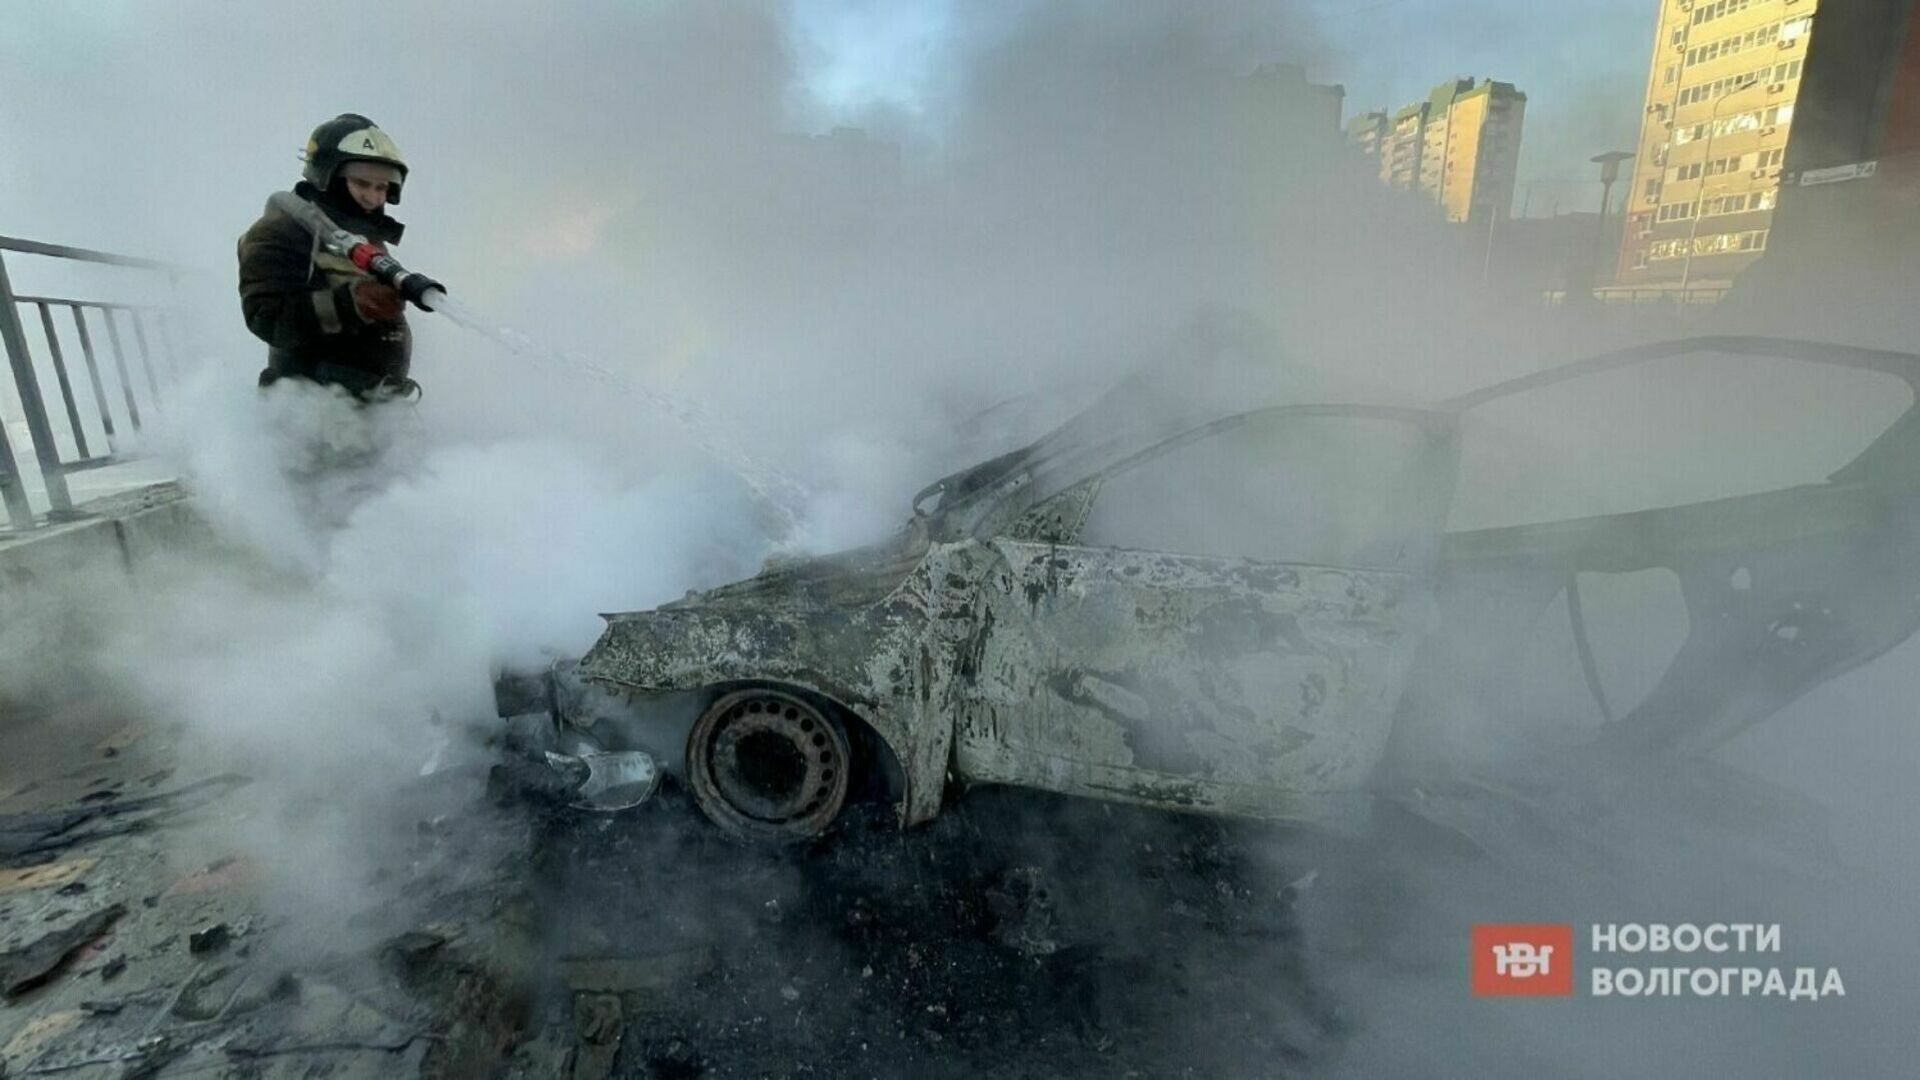 Ребенок заживо сгорел во взорвавшейся машине в Волгограде